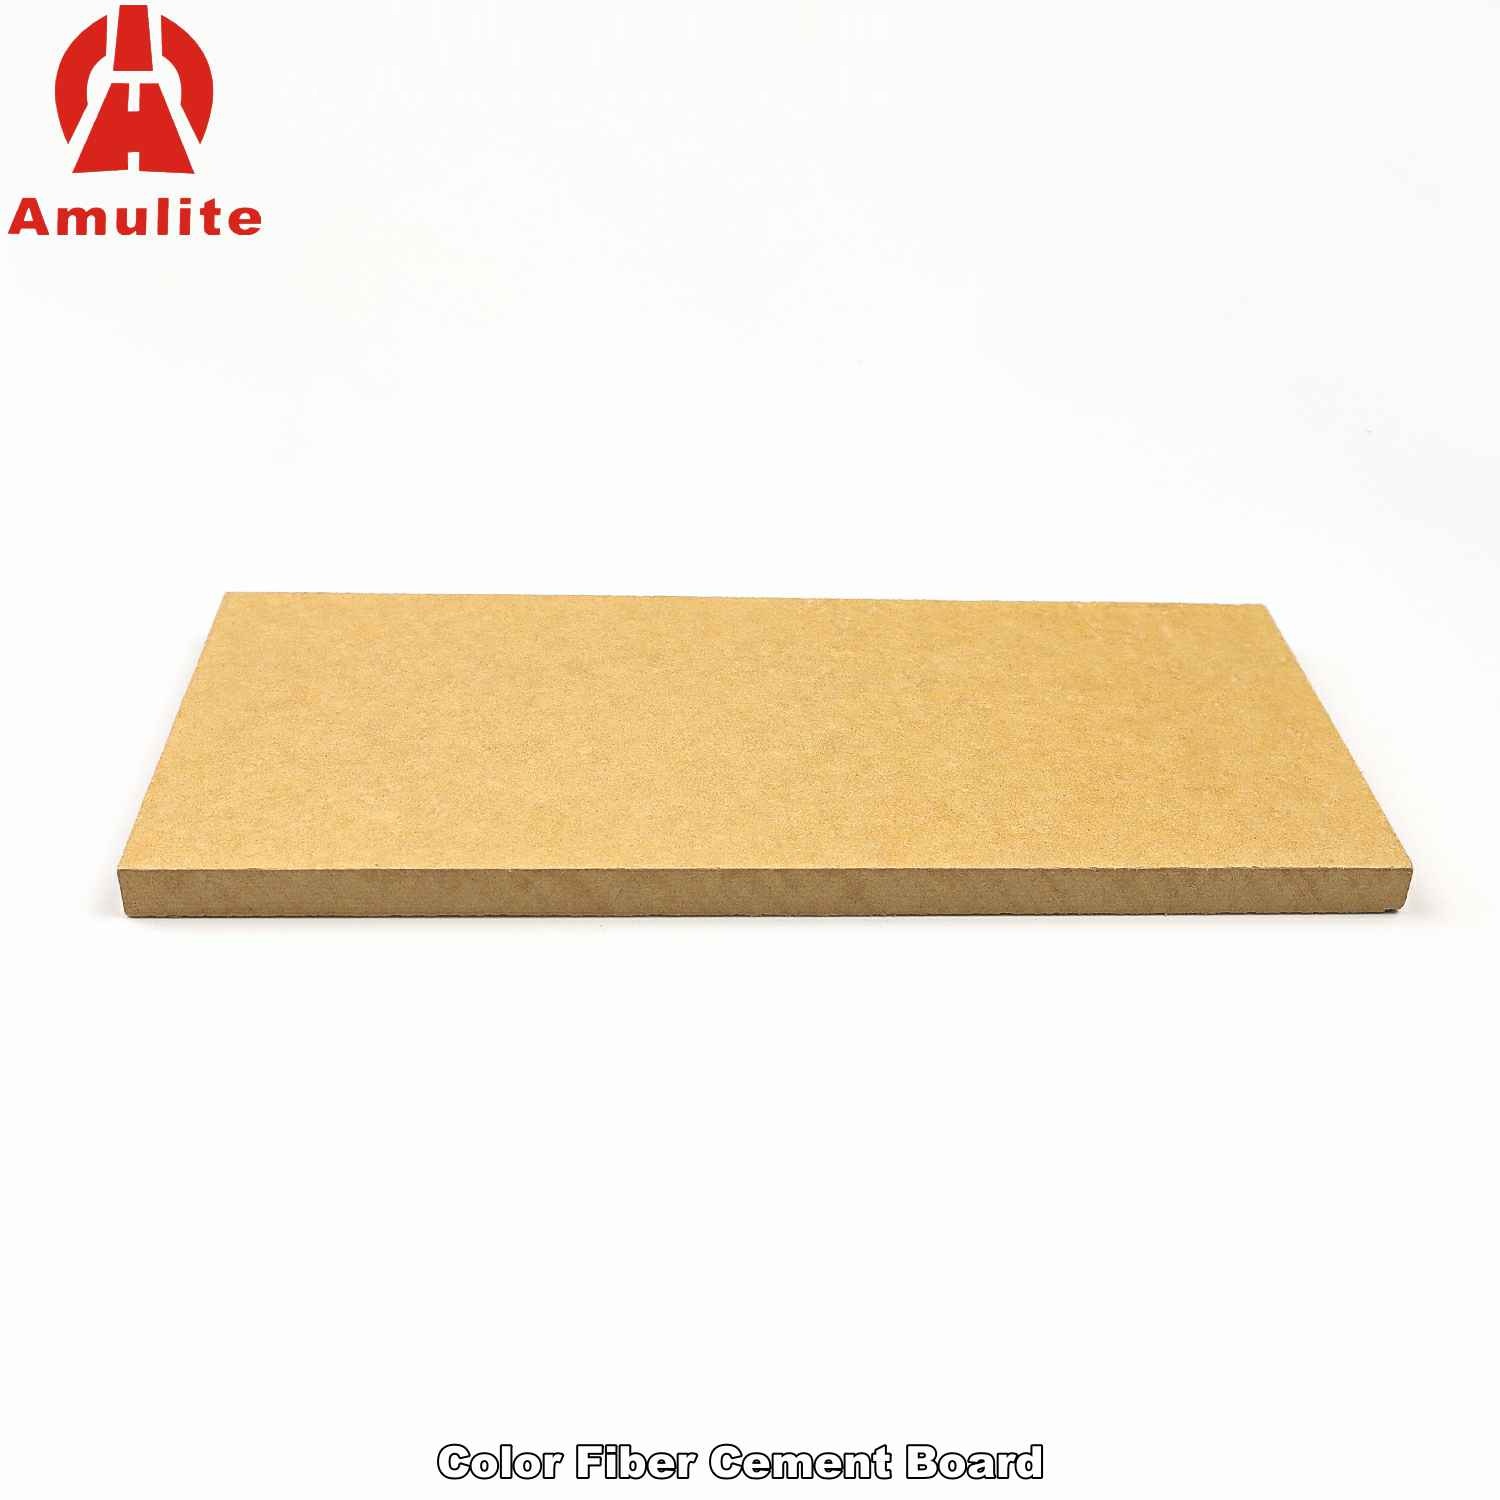 Color Fiber Cement Board (8)